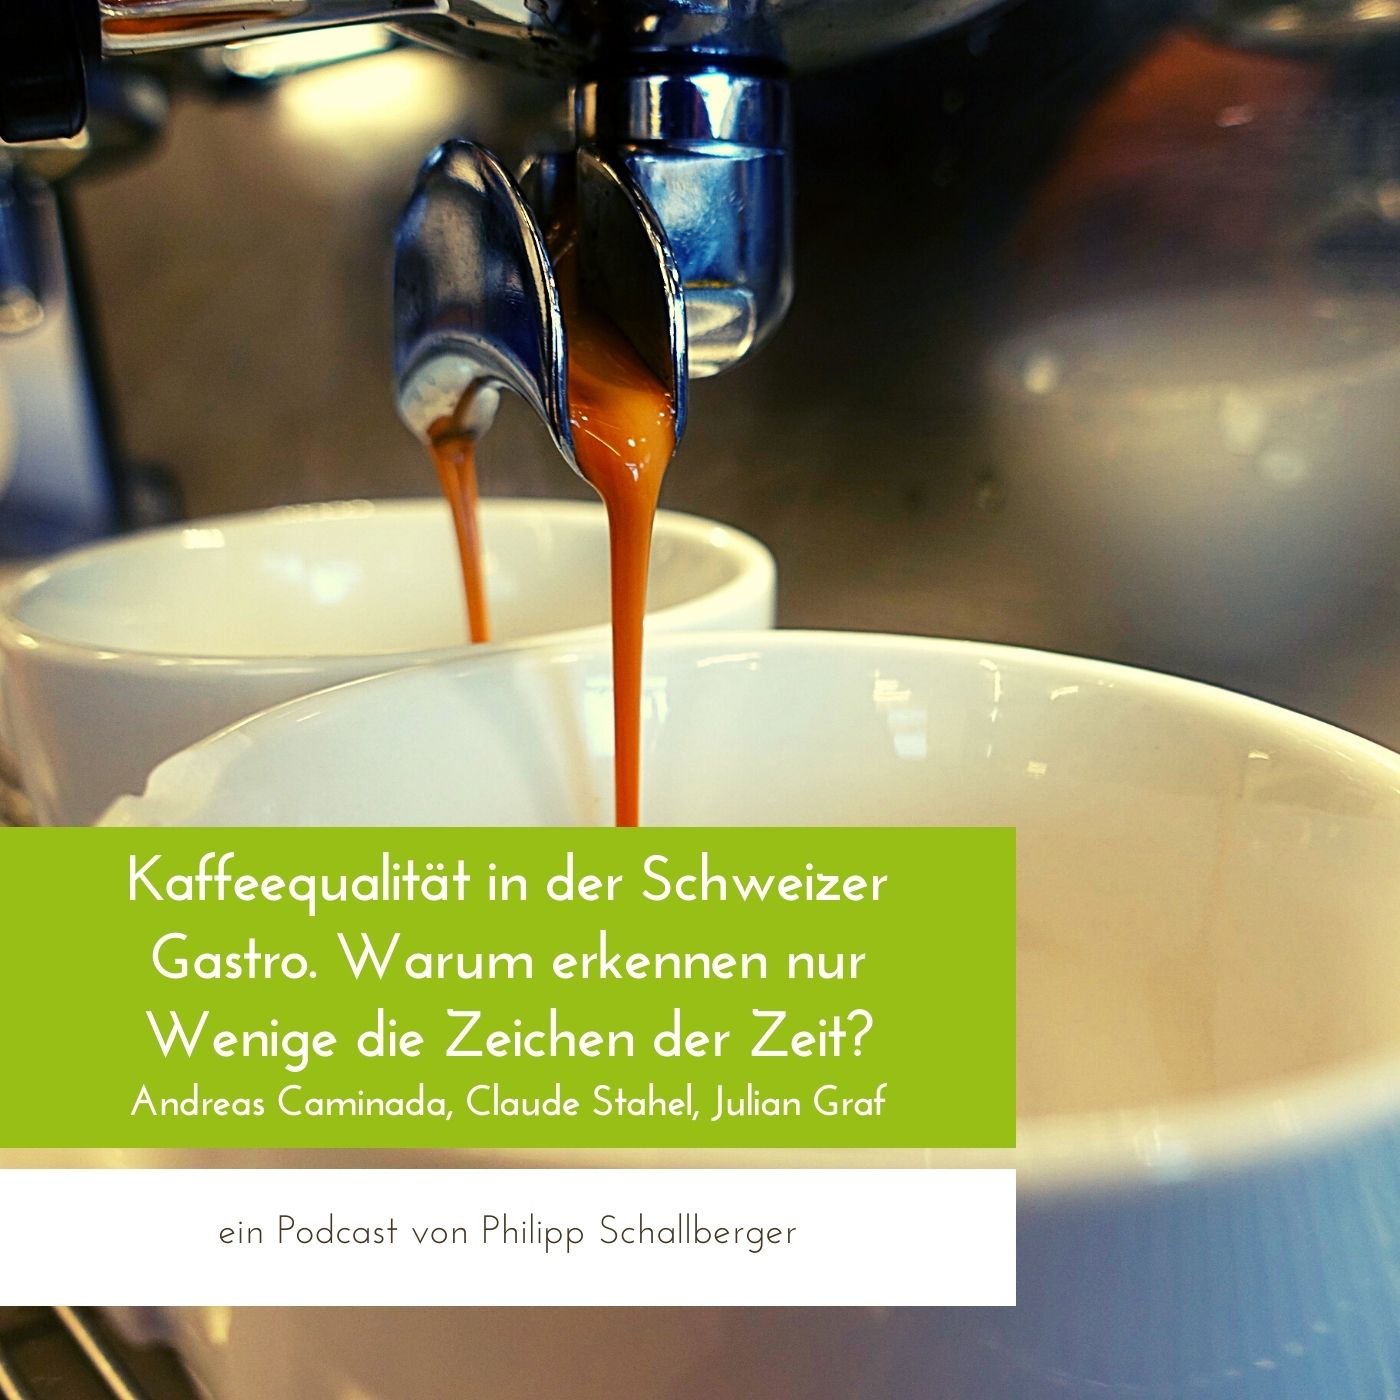 Die Kaffeequalität in der Schweizer Gastronomie.